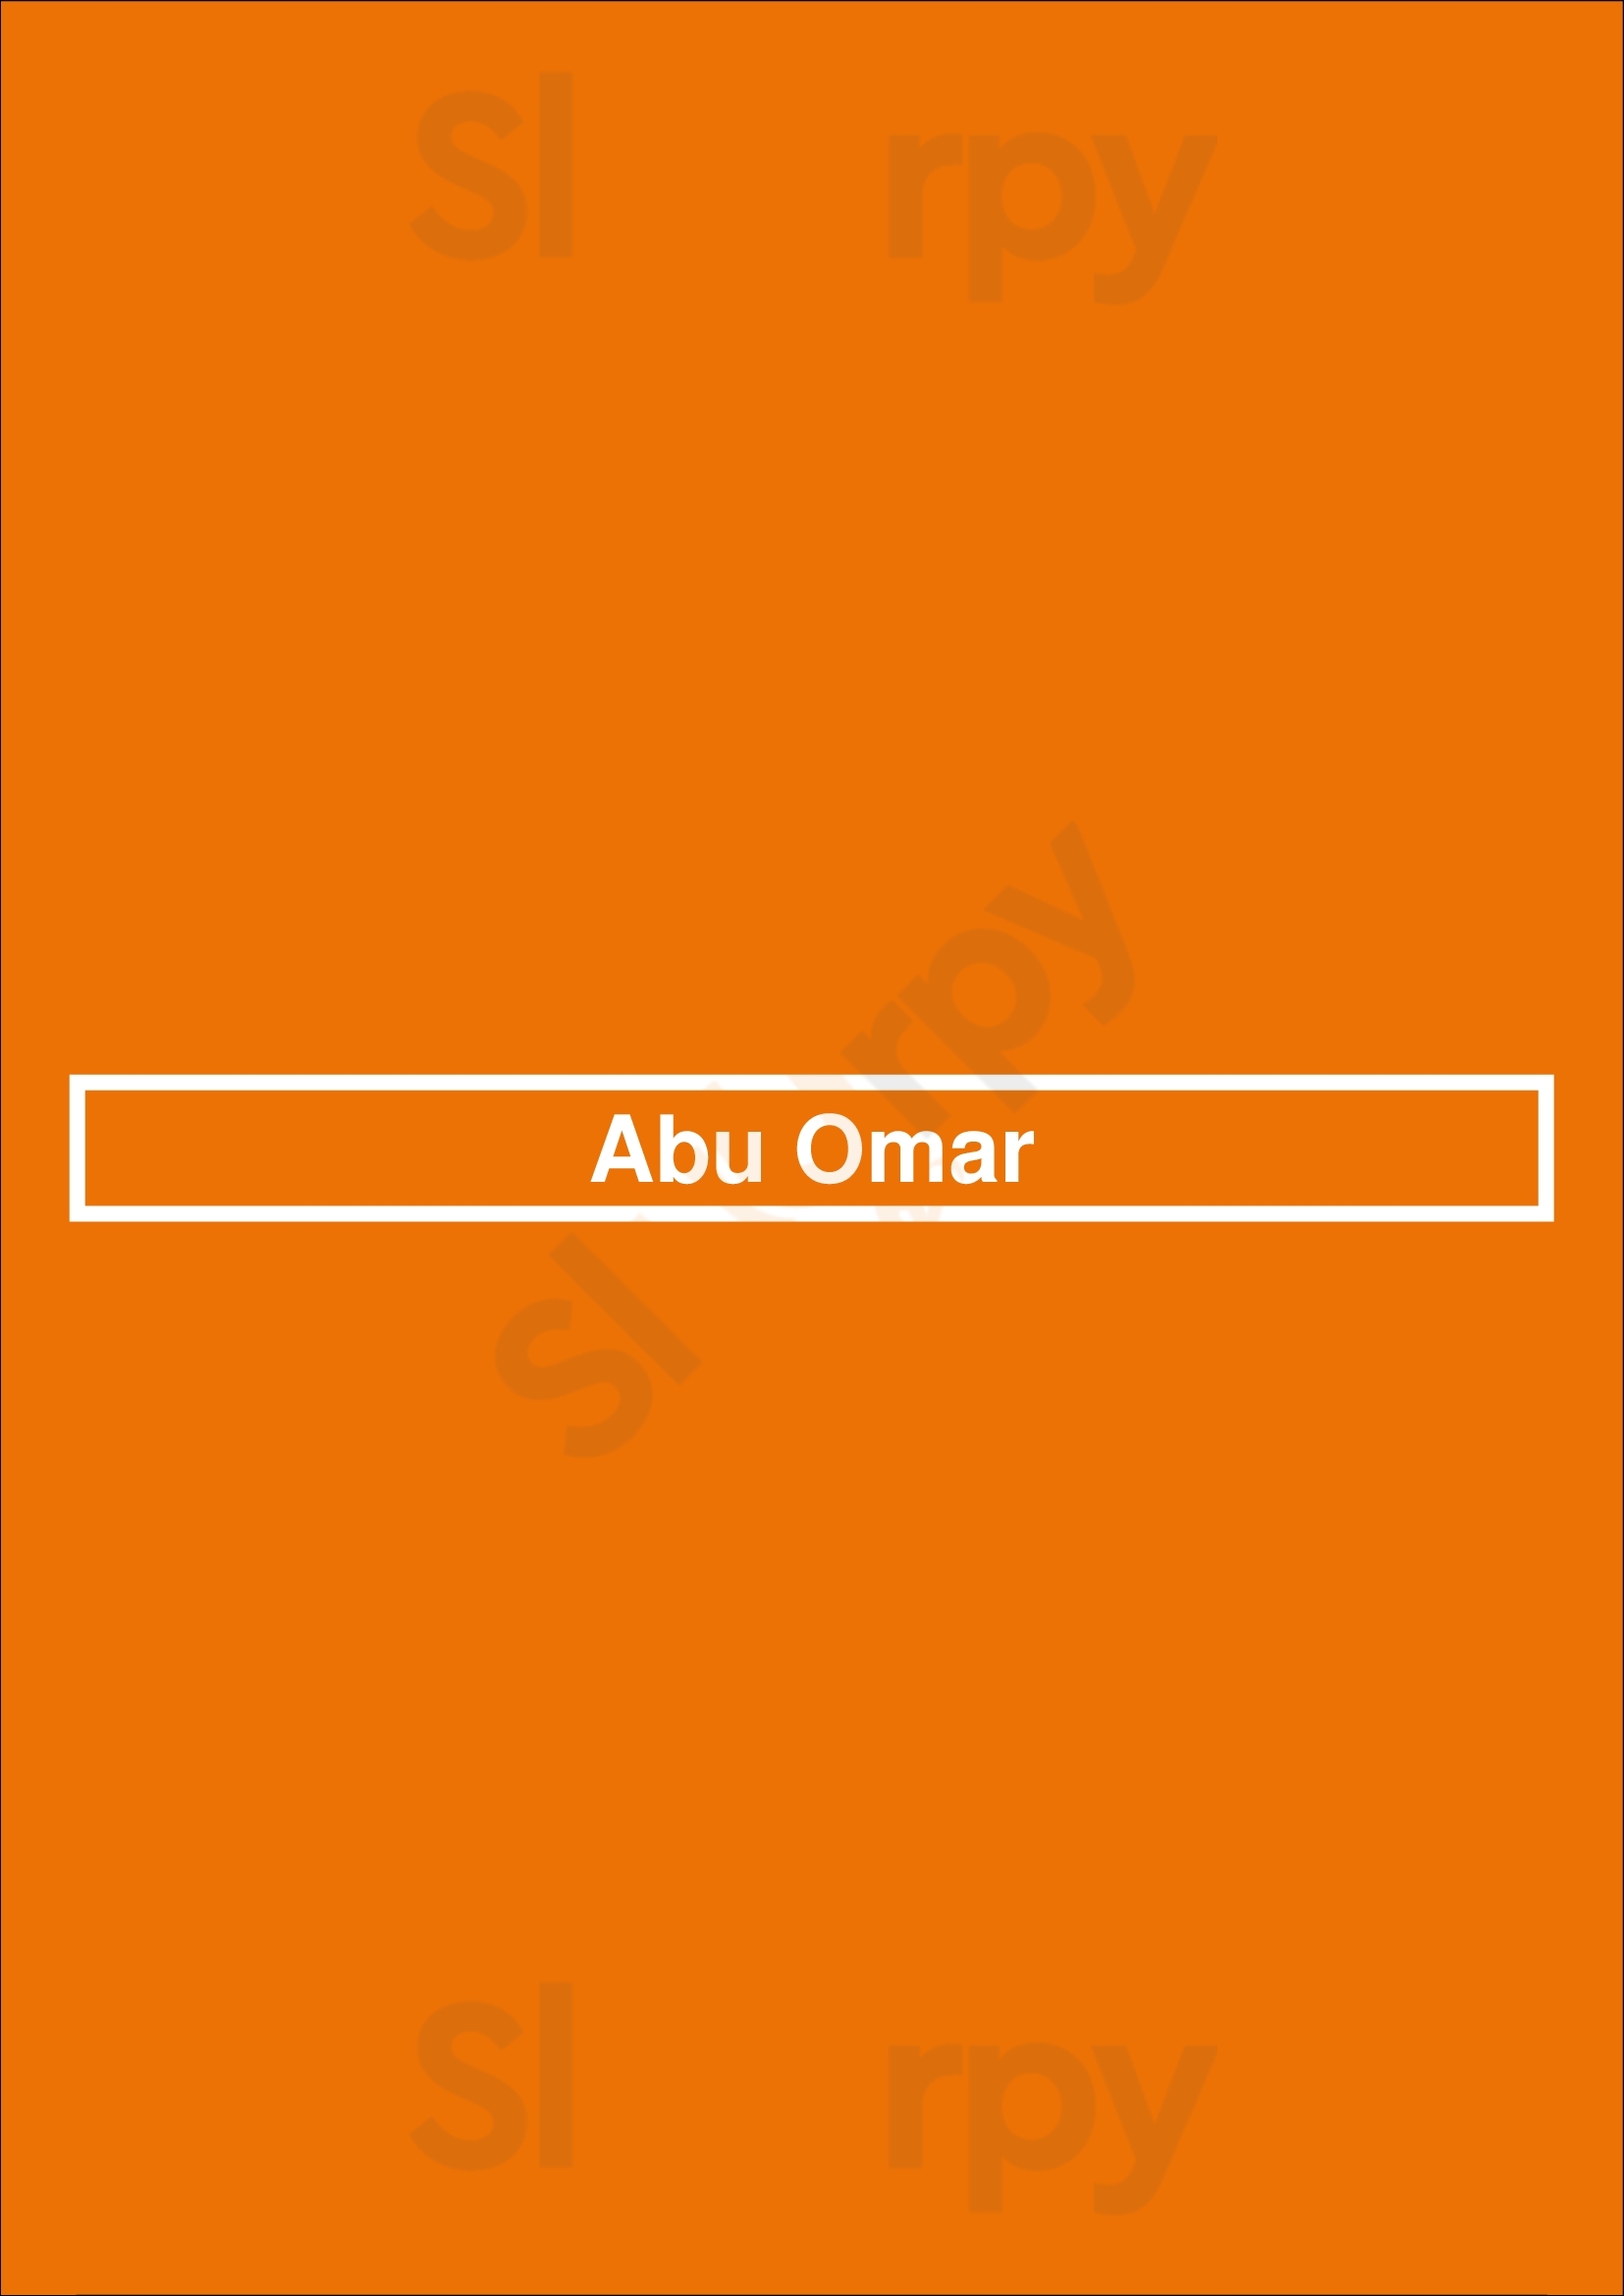 Abu Omar Houston Menu - 1